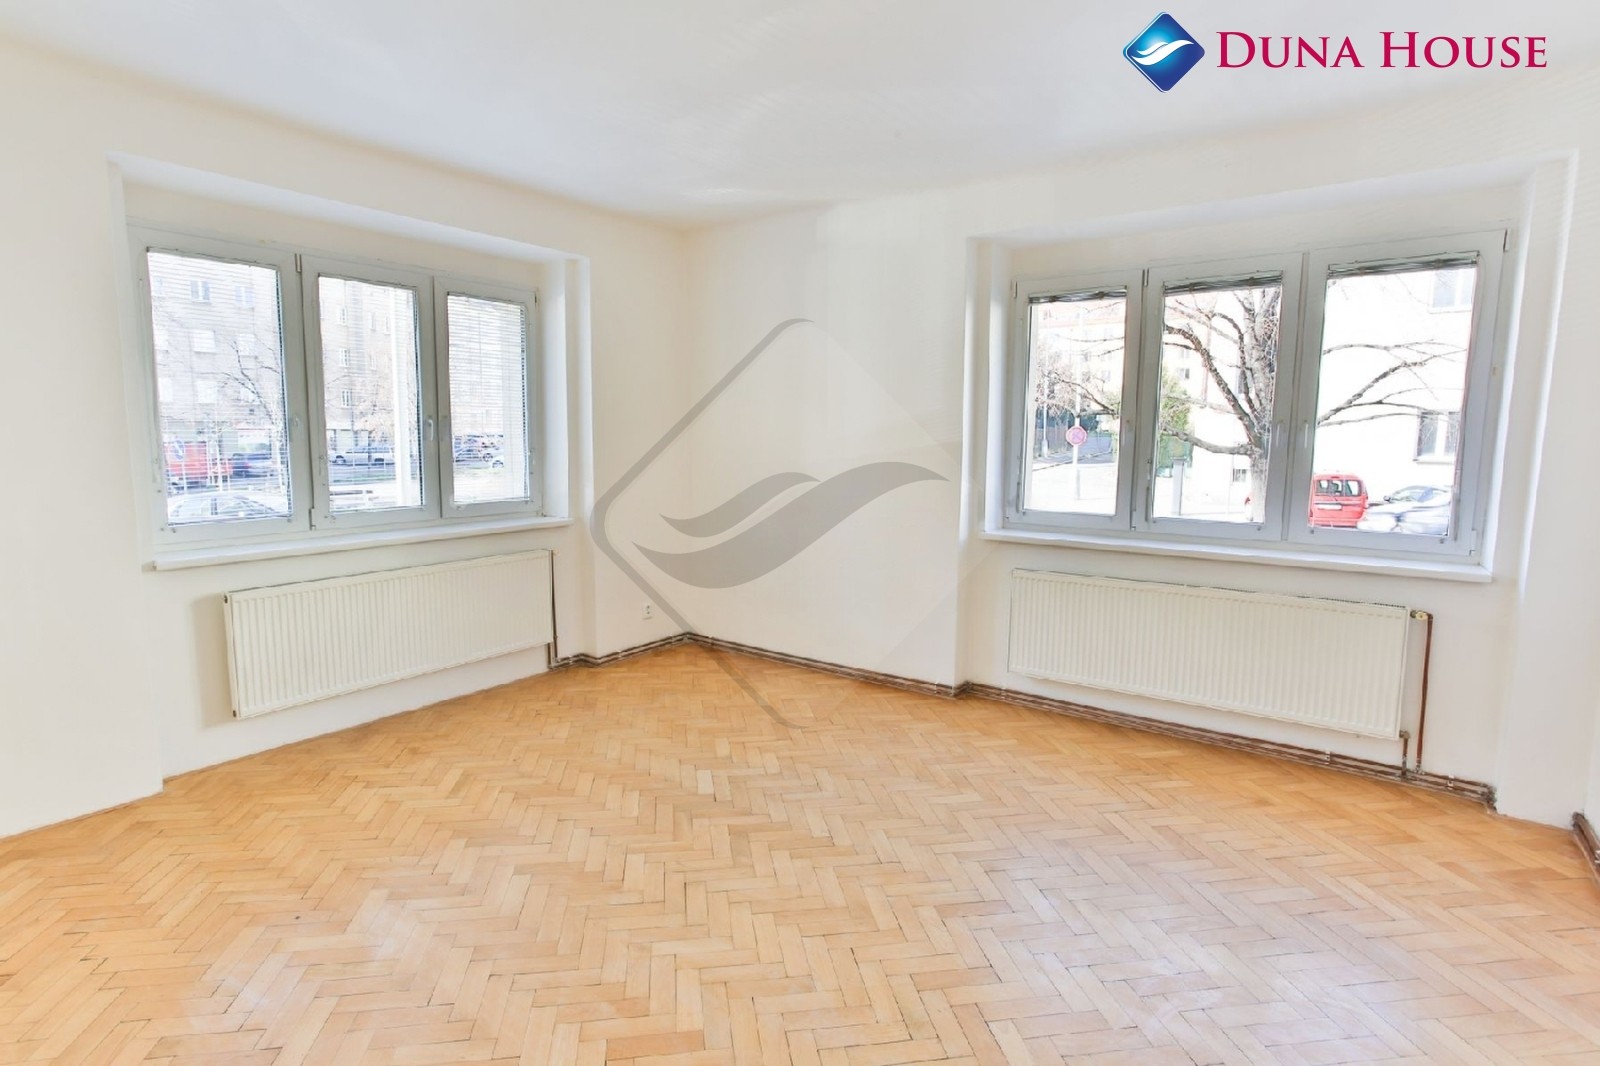 Prodej bytu 2+1, 69 m², s balkonem, Praha 4 - Nusle.